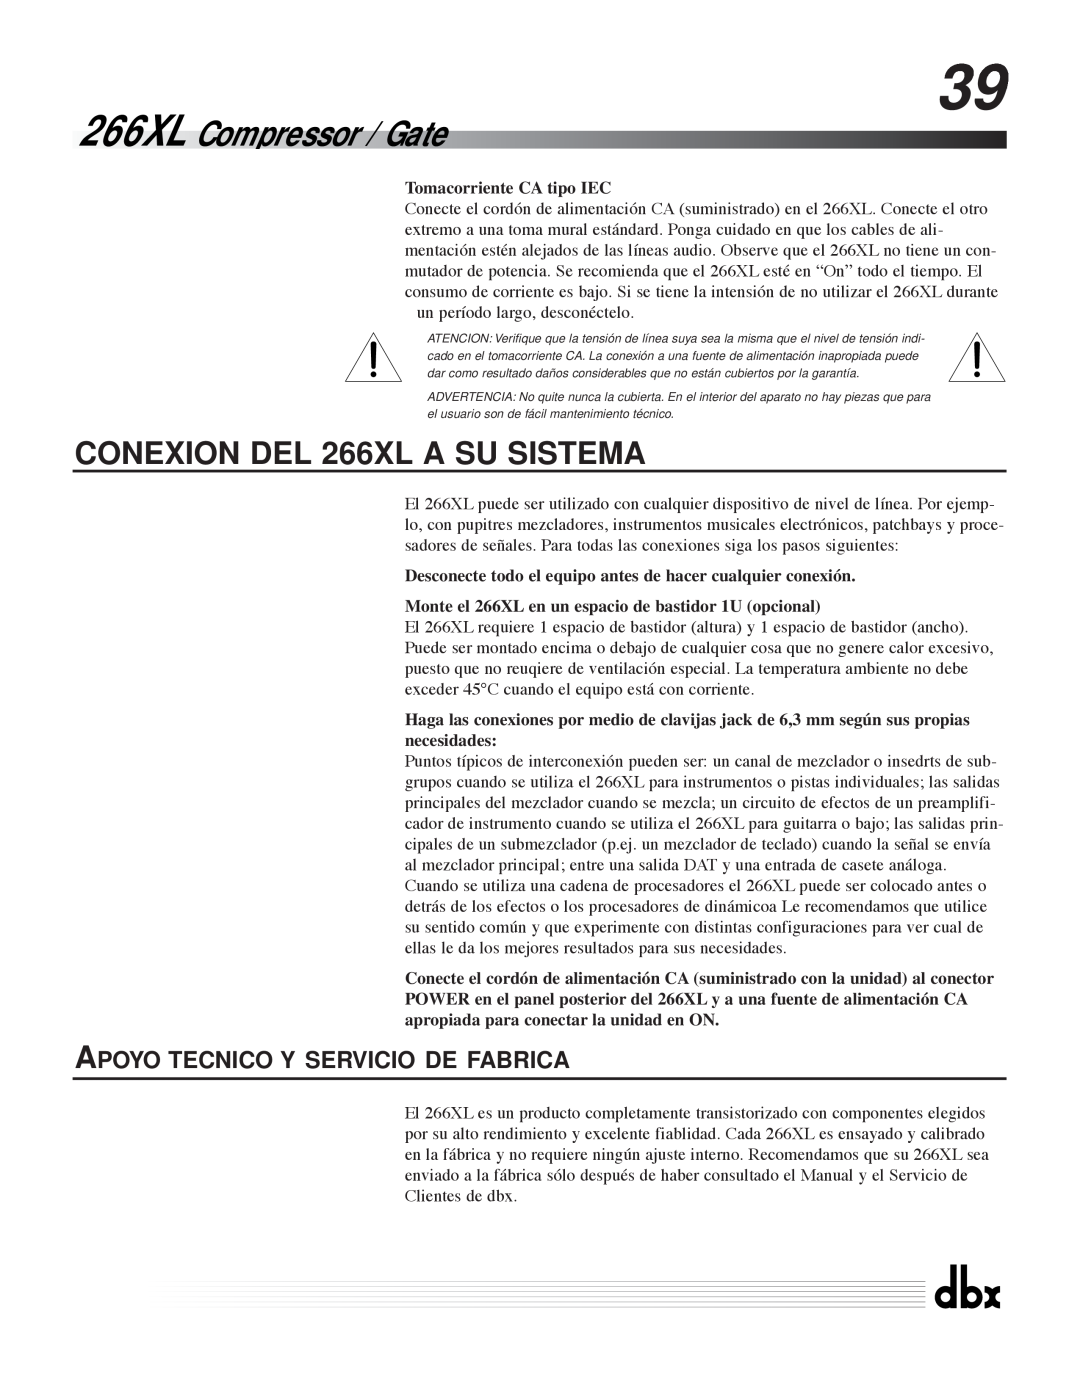 dbx Pro Apoyo Tecnico Y Servicio De Fabrica, 266XL Compressor / Gate, CONEXION DEL 266XL A SU SISTEMA 